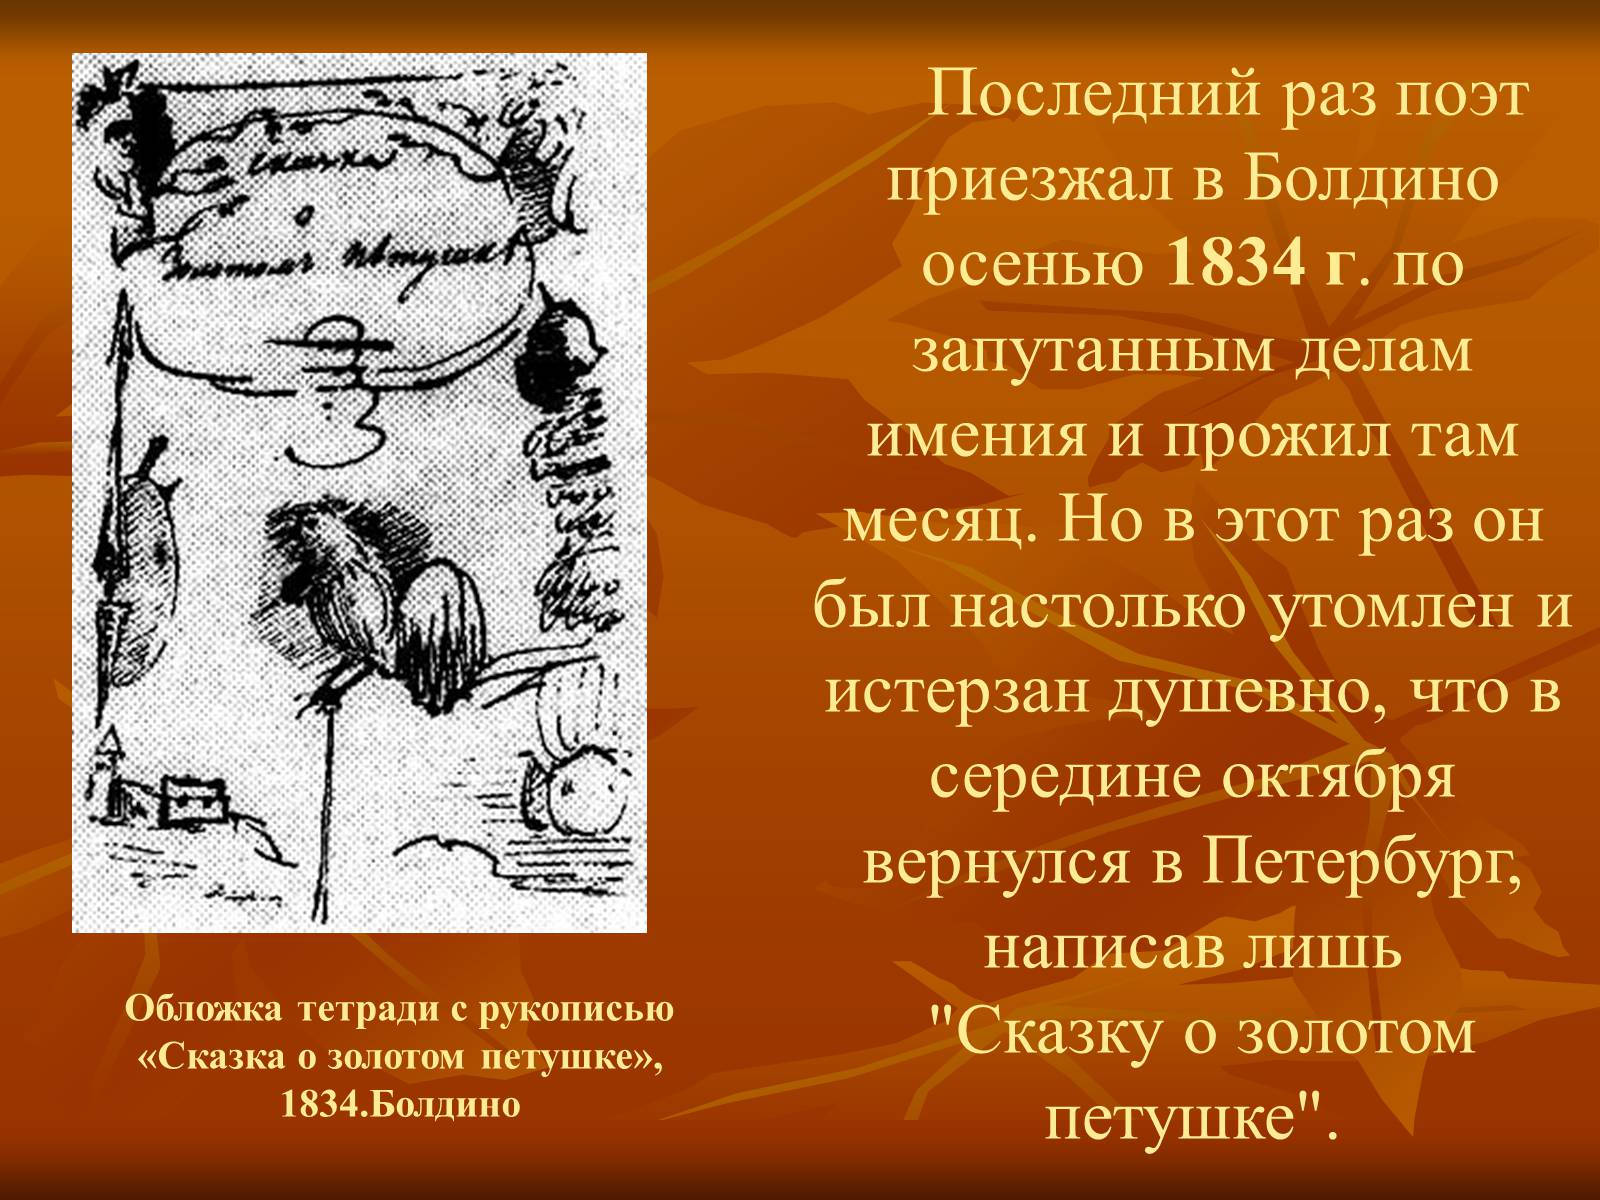 Болдинская осень Пушкина 1834